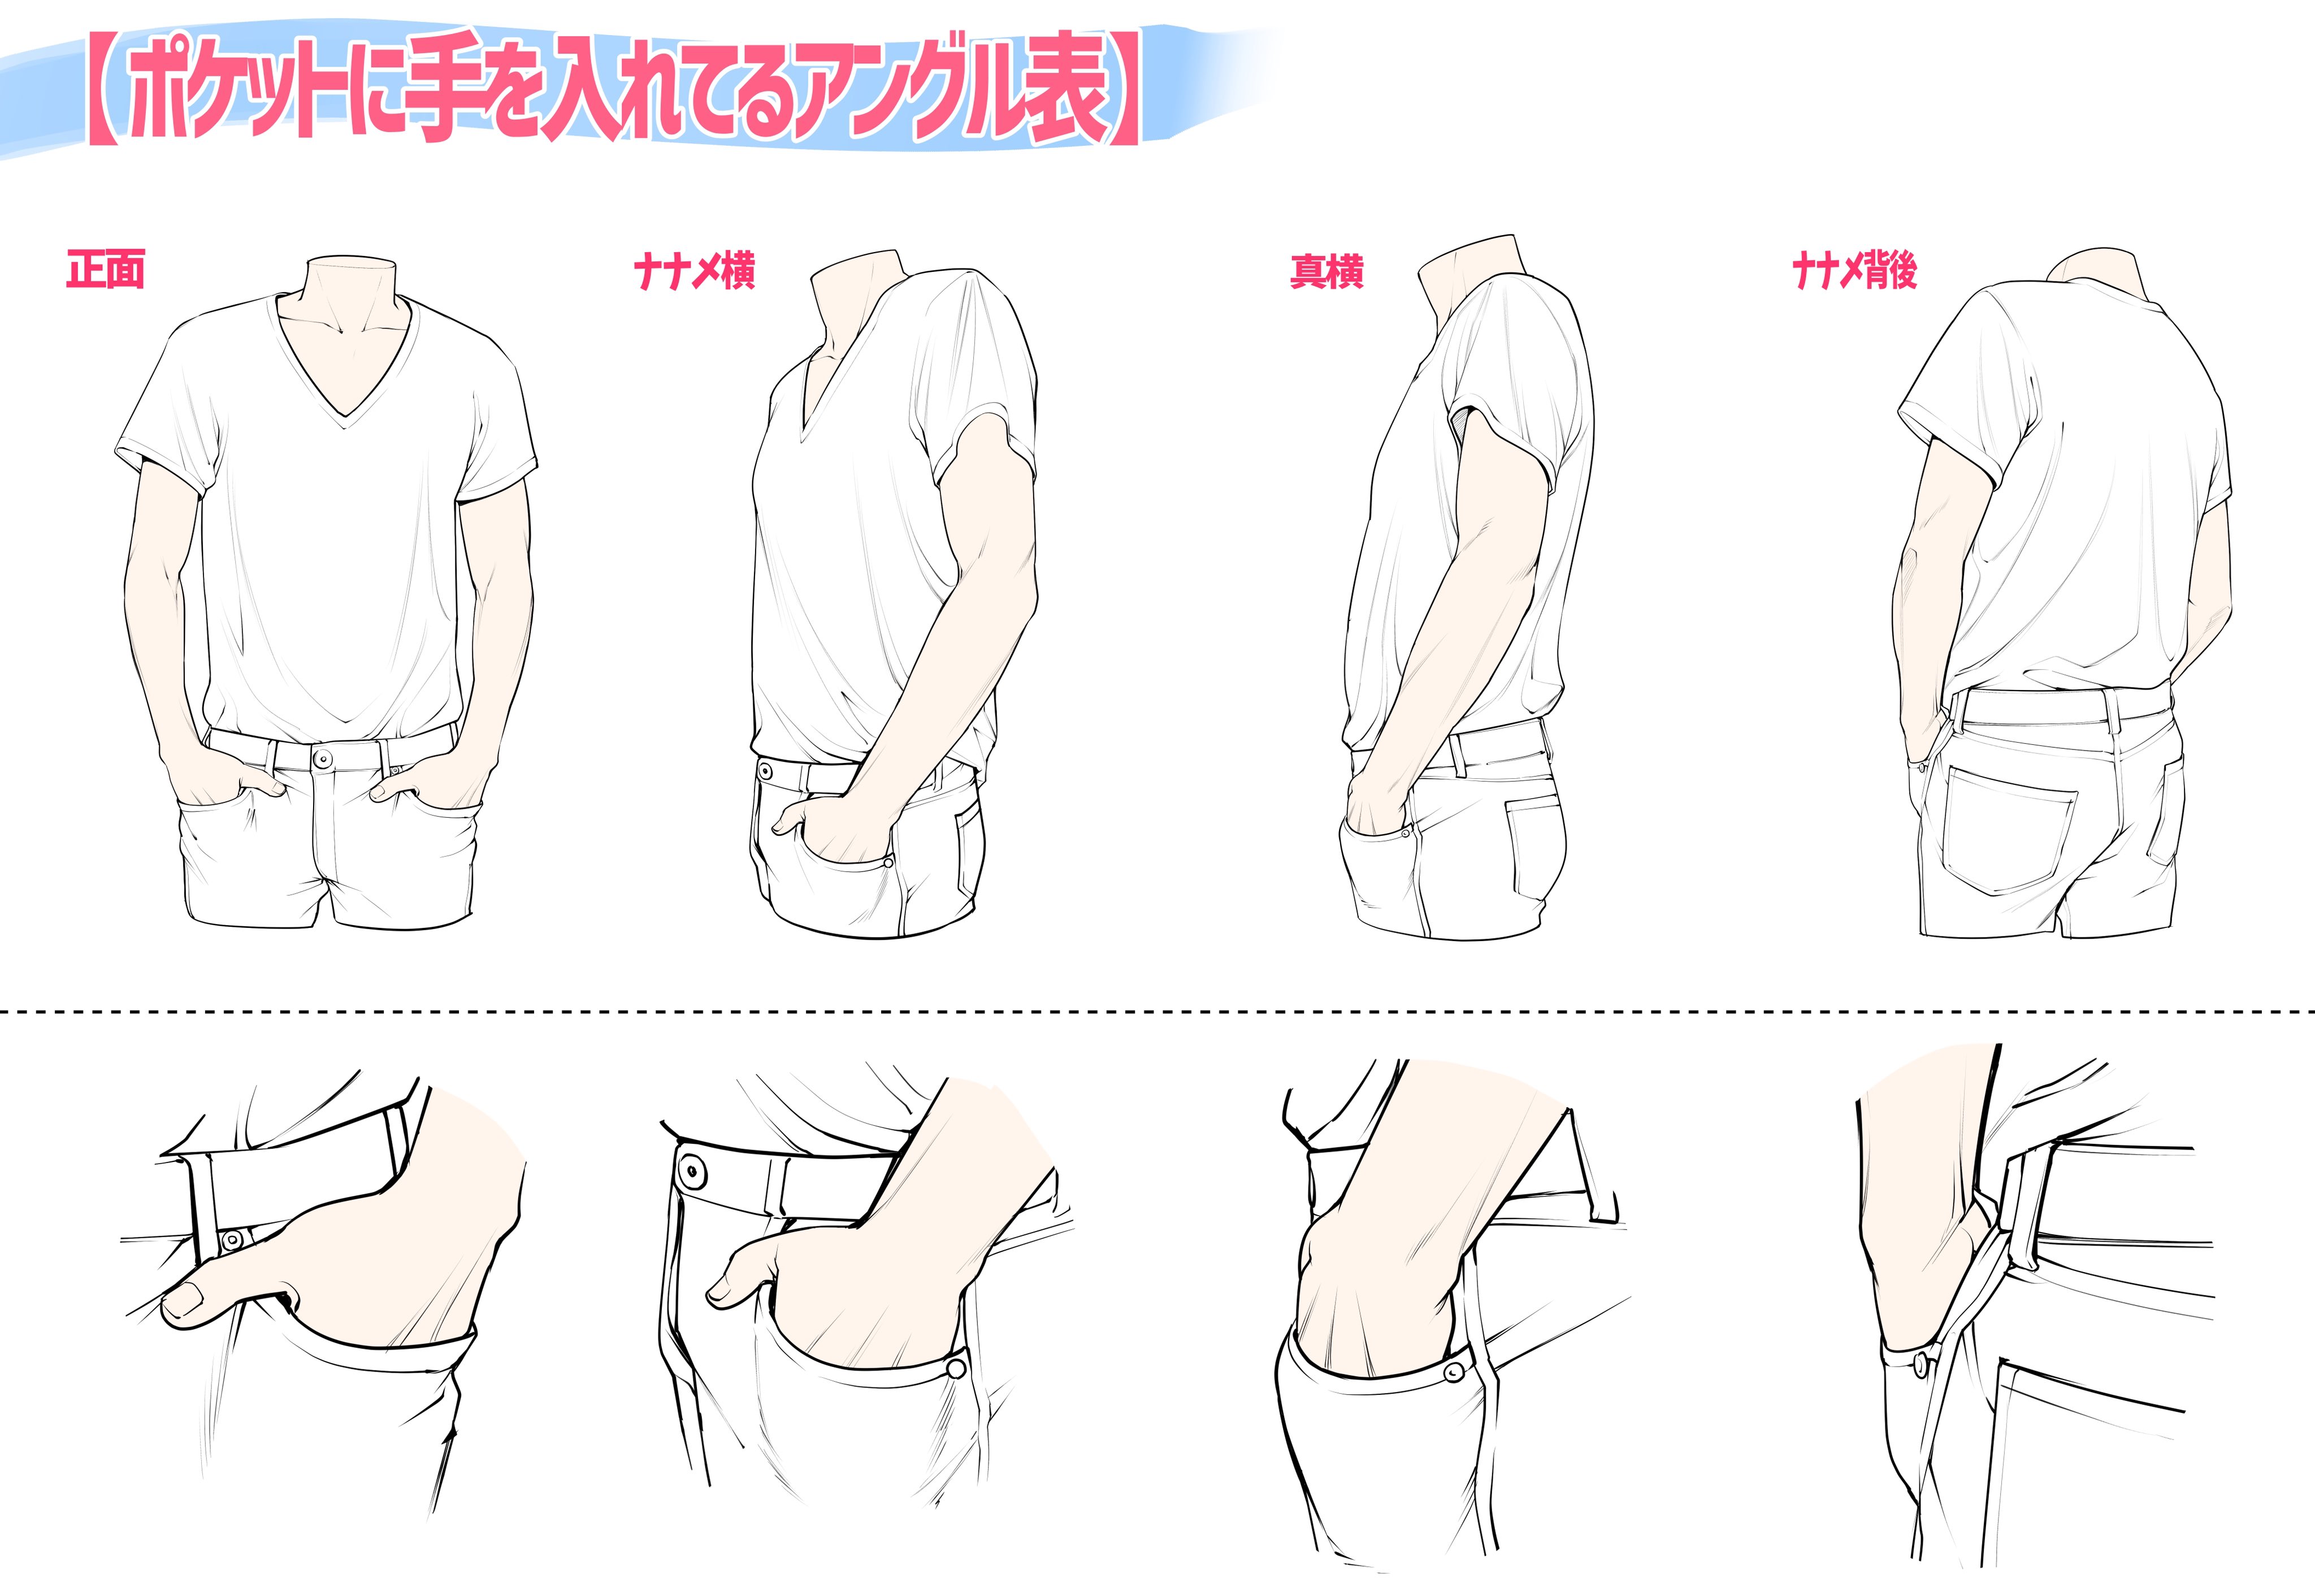 吉村拓也 イラスト講座 腰に手を当てるポーズの描き方 下手に見えやすい例 上手に見えやすい例 T Co Wmodatuoz0 Twitter